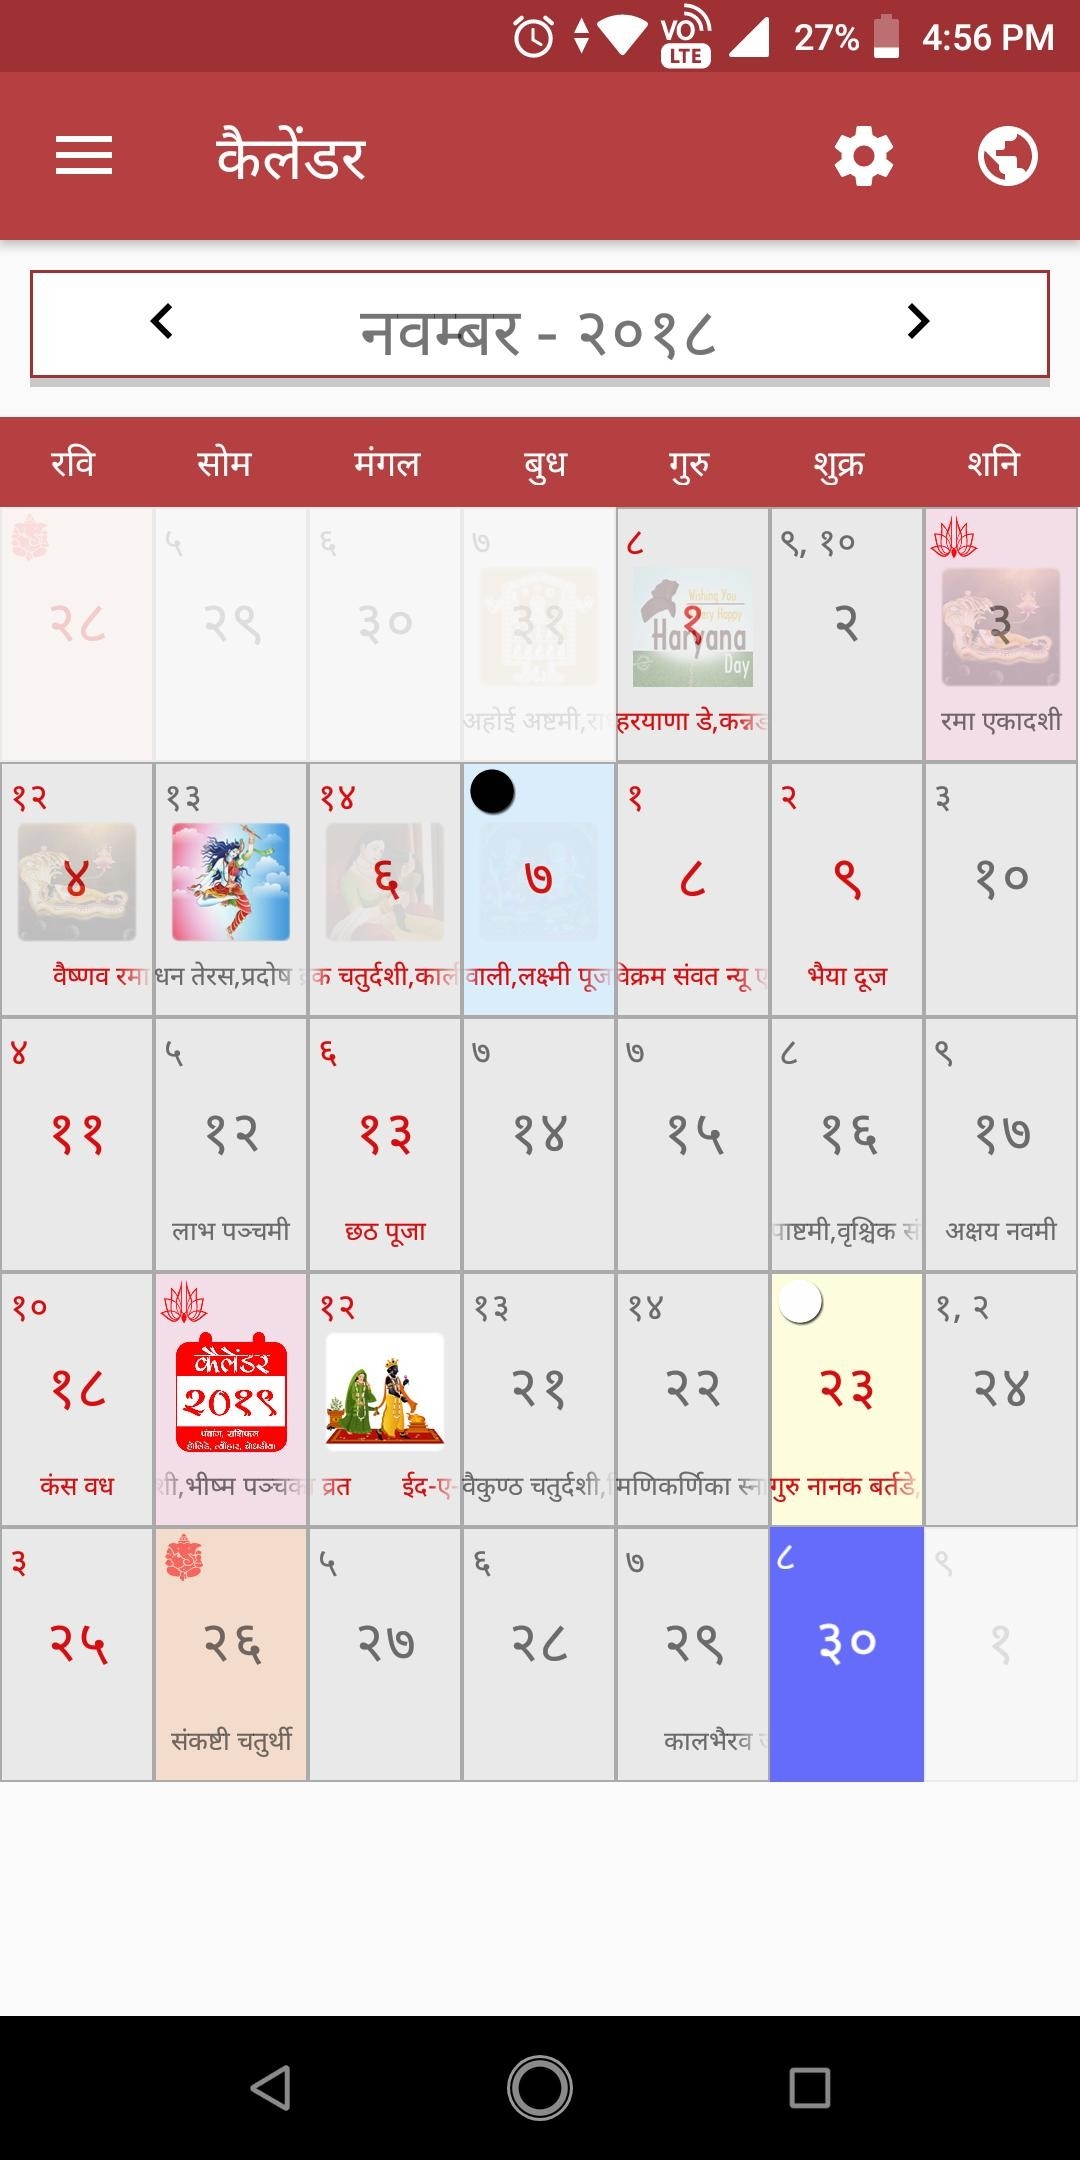 Hindi Calendar 2020 Panchang Rashifal Holiday Fest For-Calendar 2020 With Hindi And Holidays Download